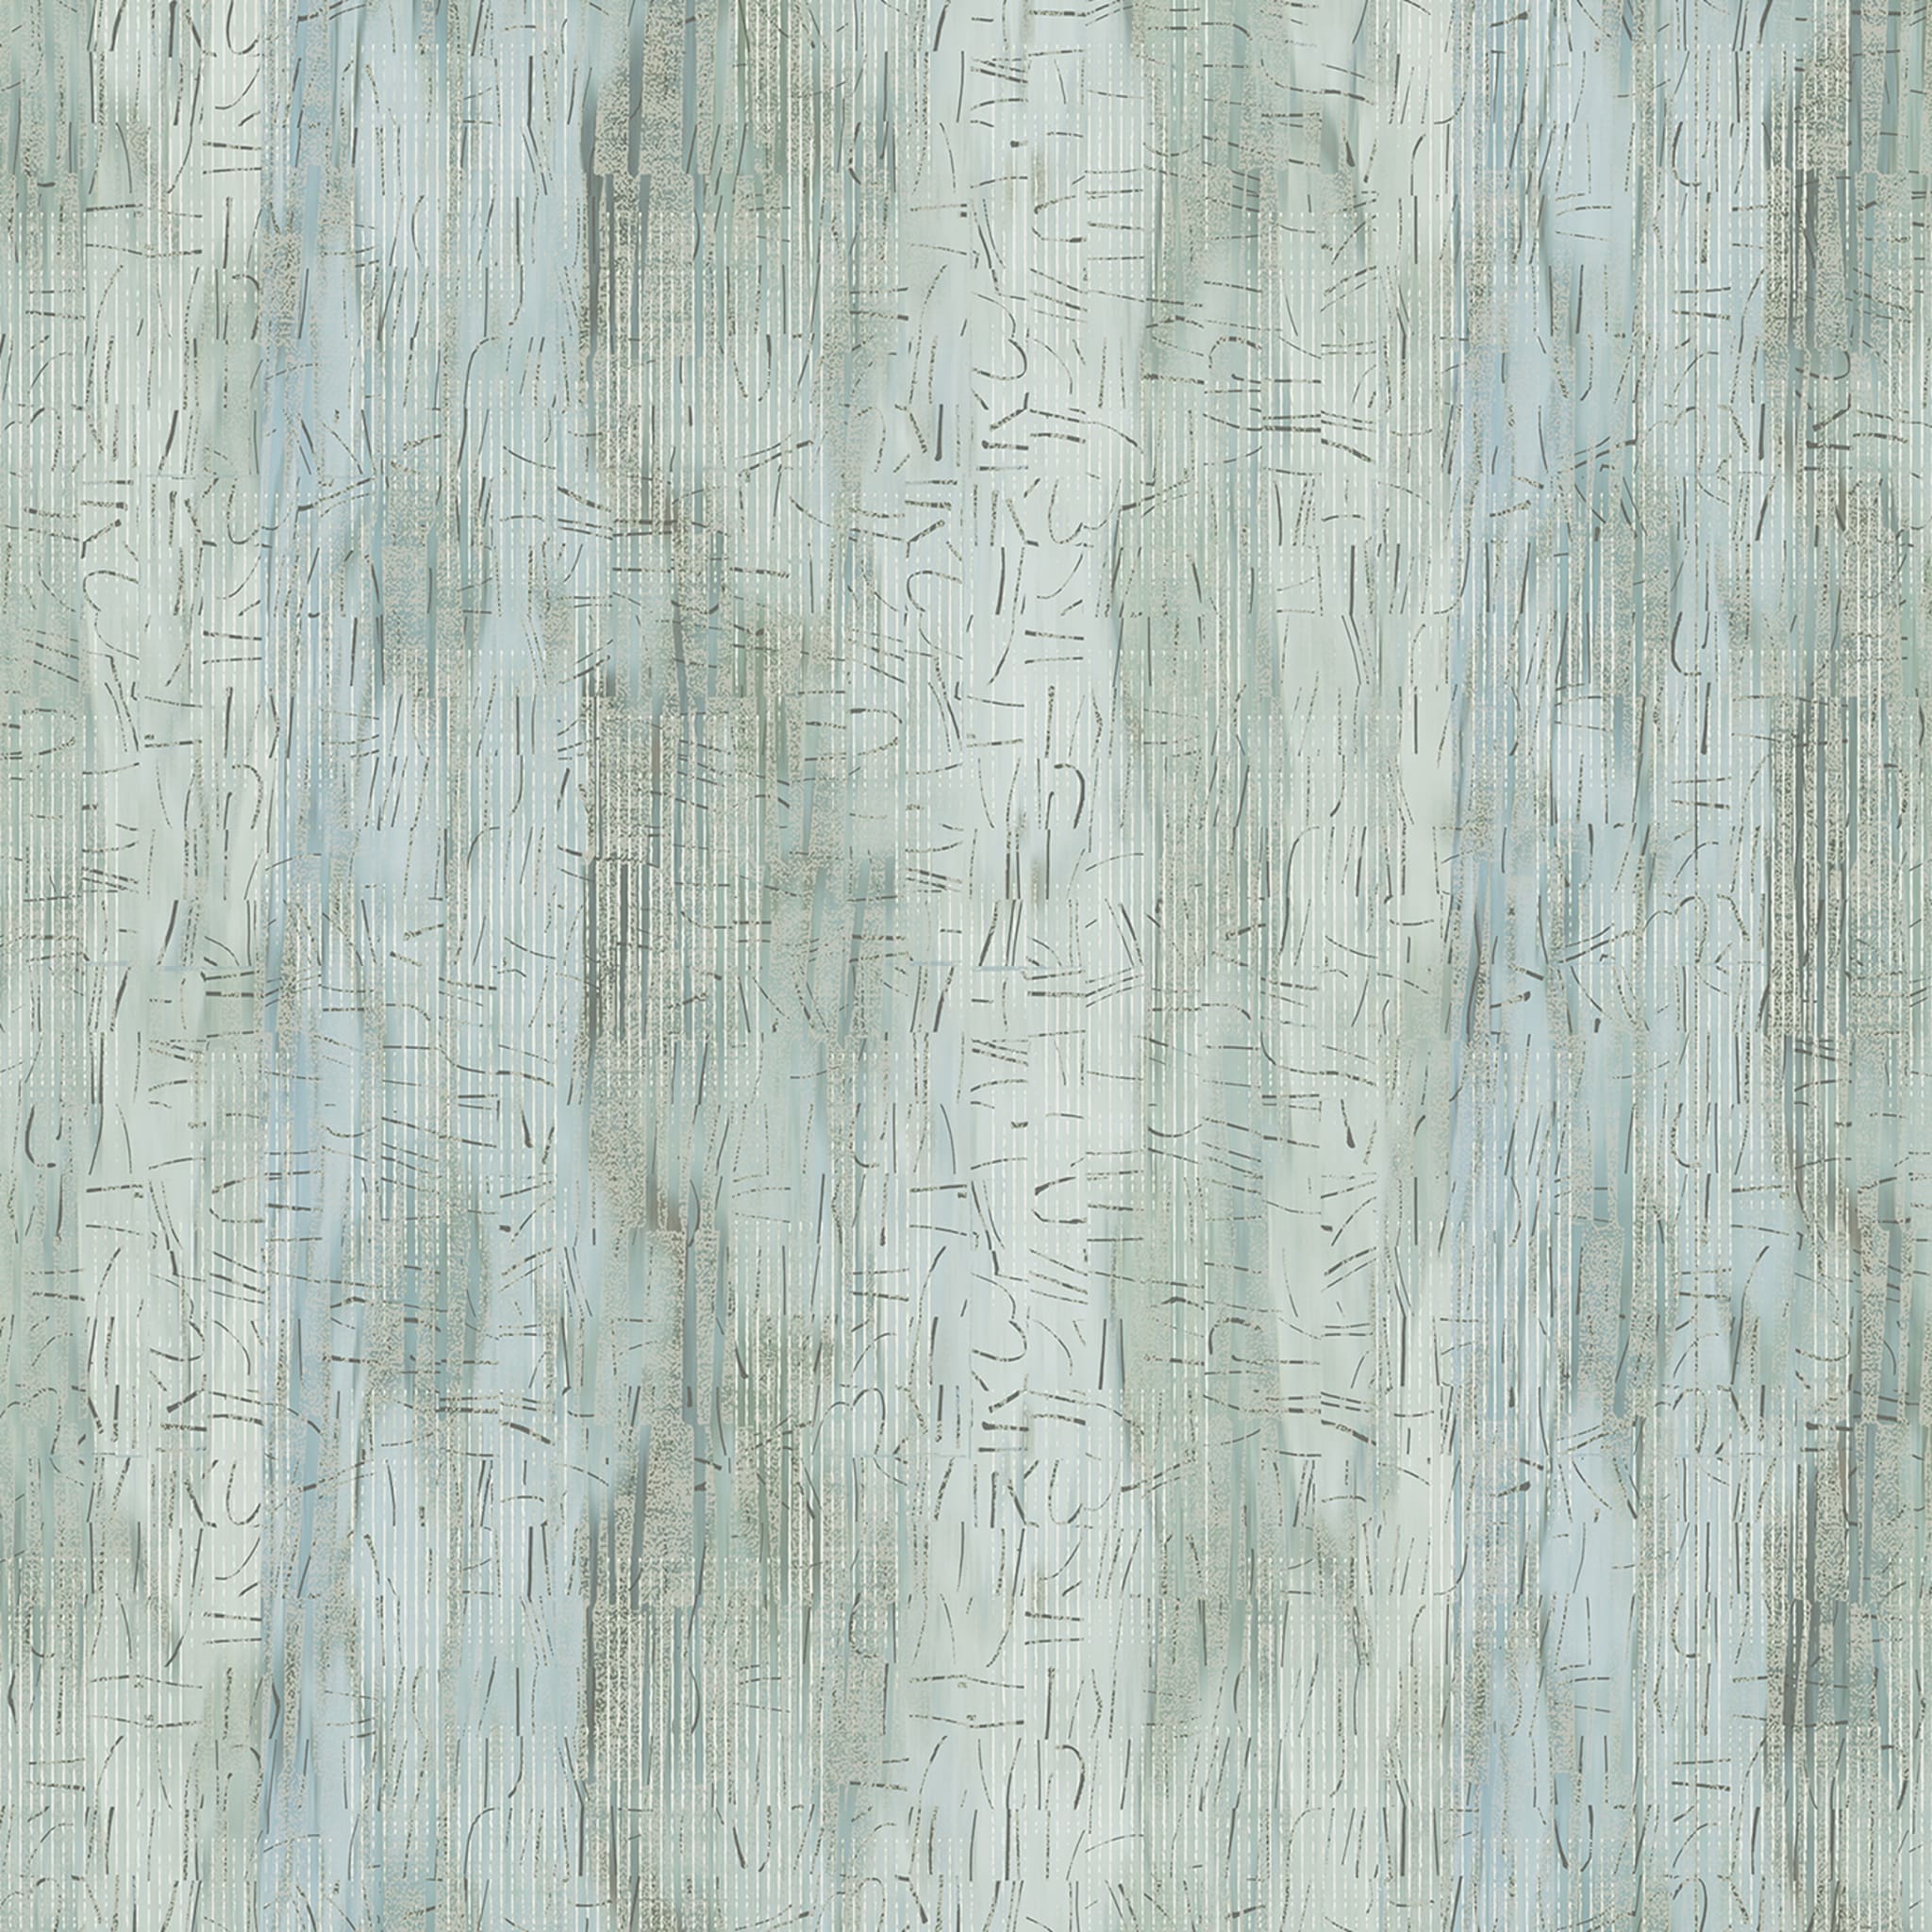 Corteccia Wallpaper by THDP - Alternative view 1